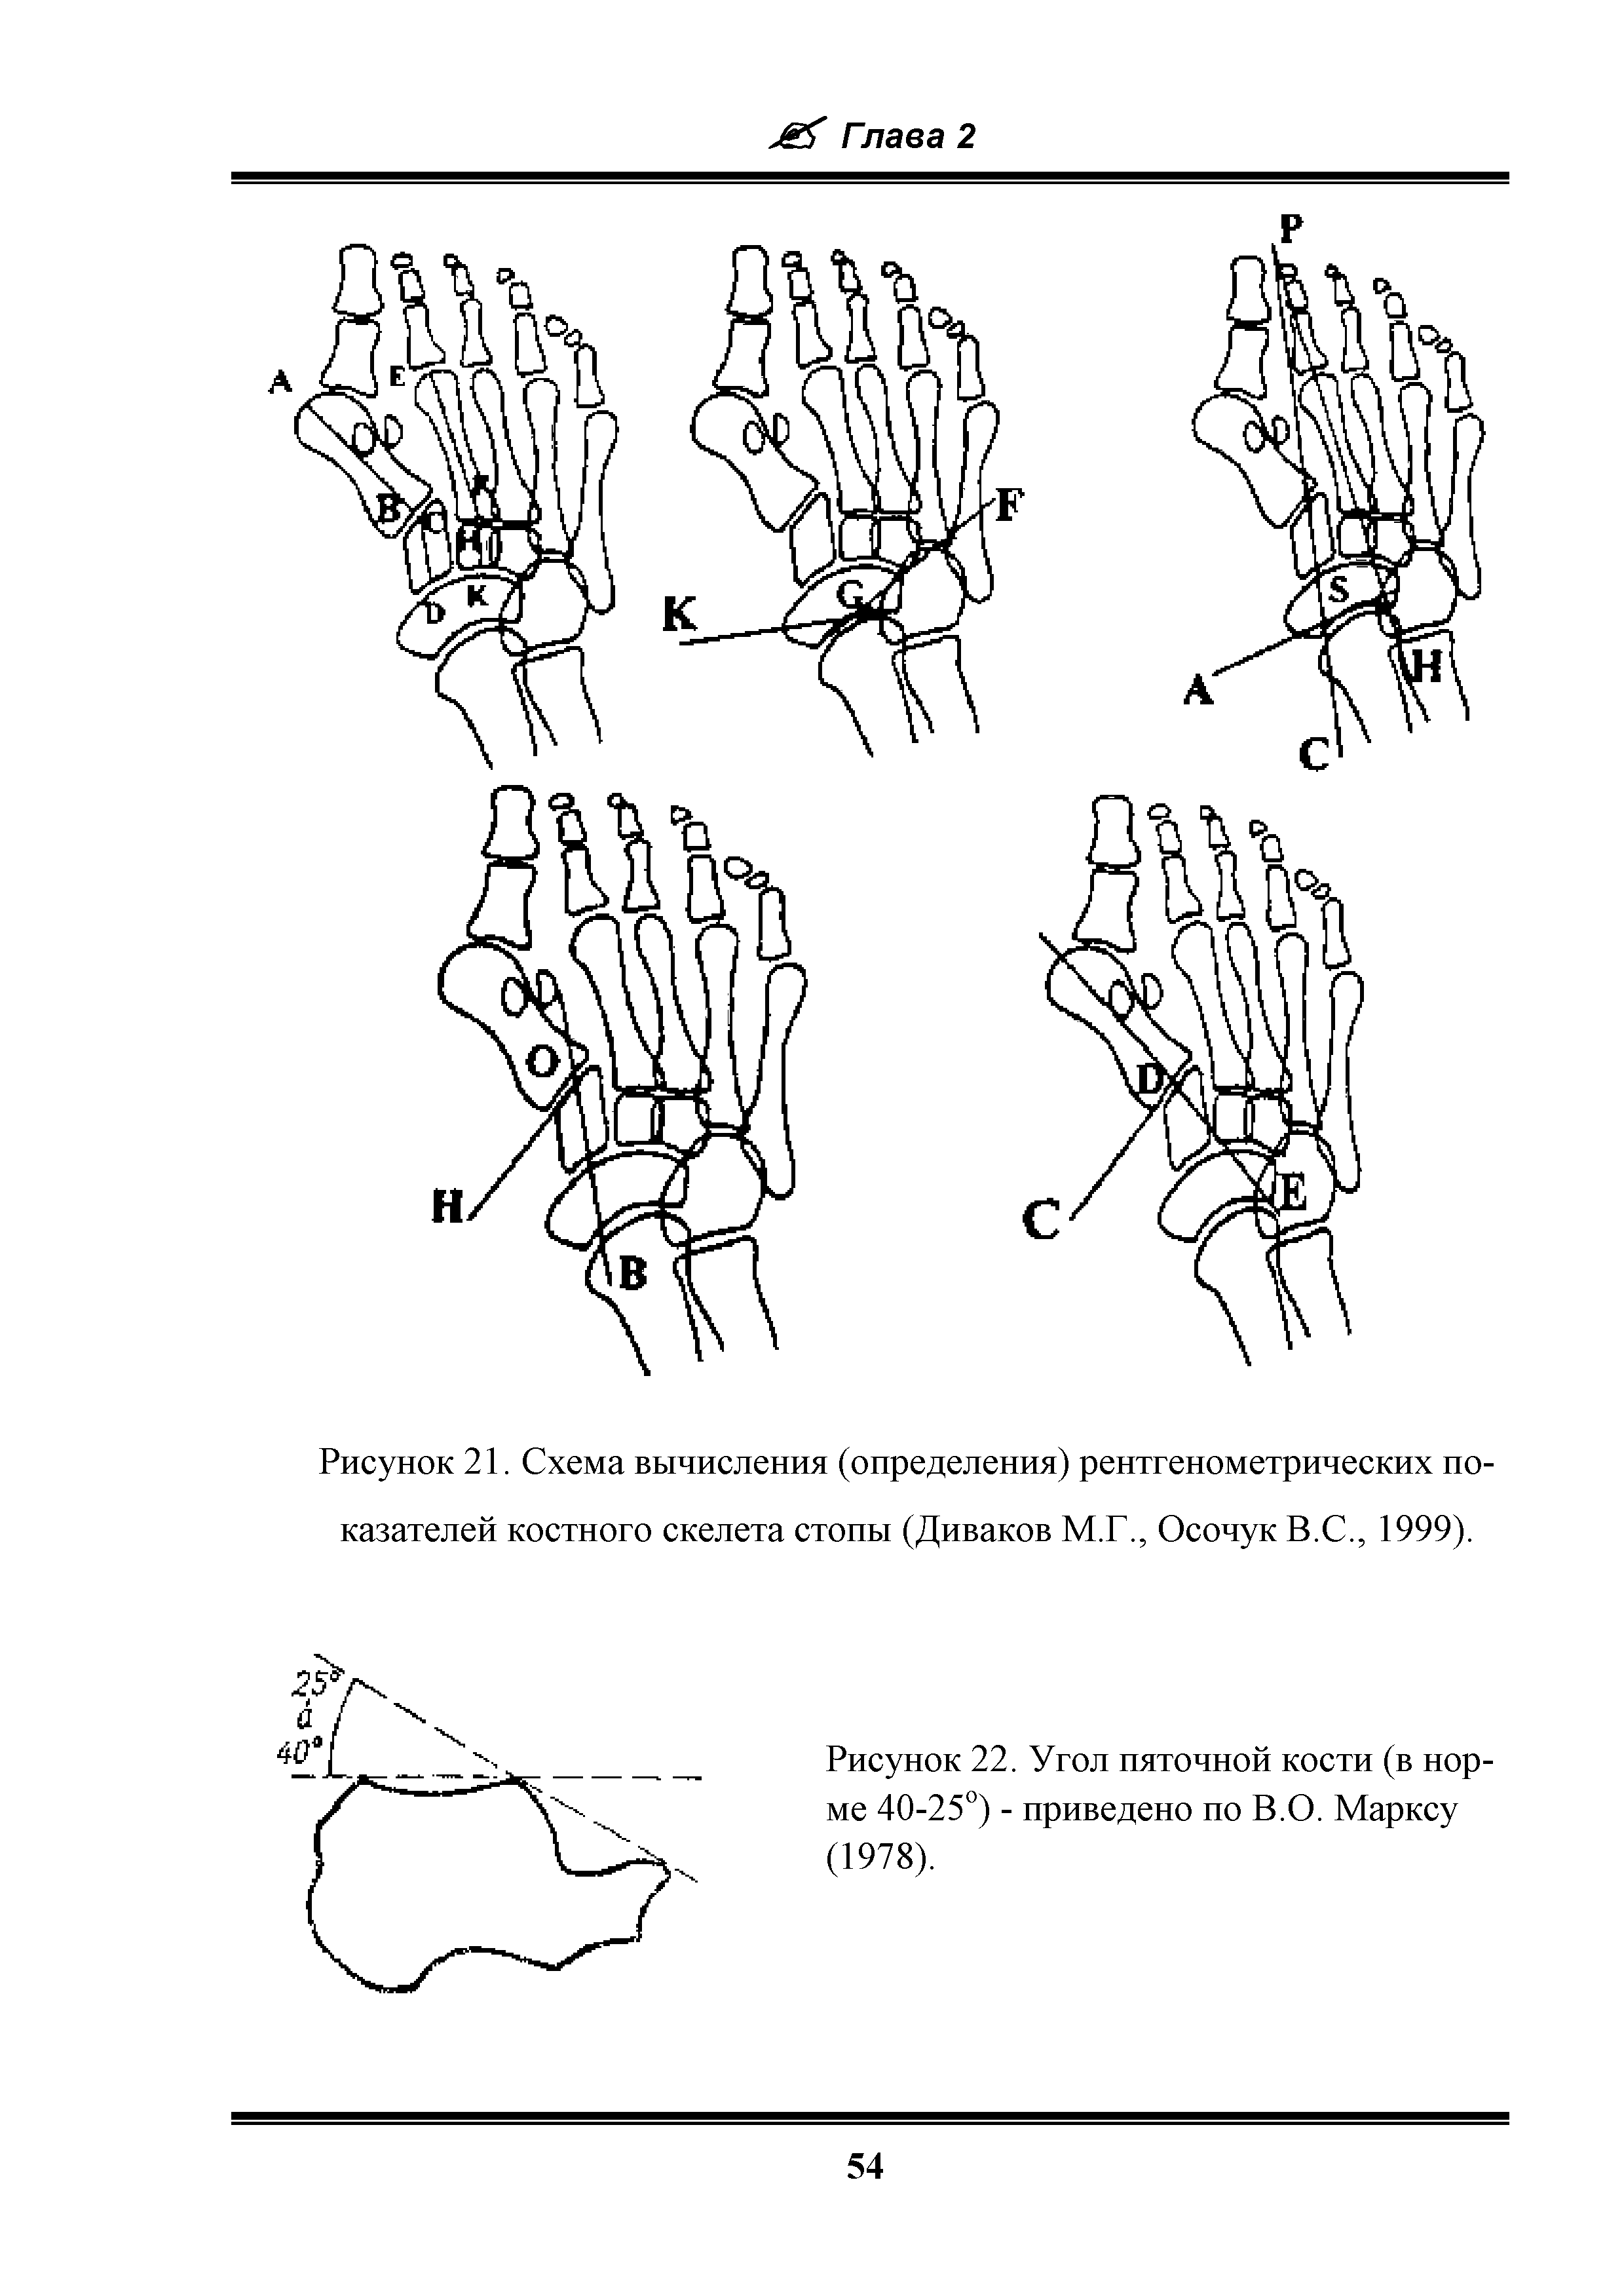 Рисунок 21. Схема вычисления (определения) рентгенометрических показателей костного скелета стопы (Диваков М.Г., Осочук В.С., 1999).